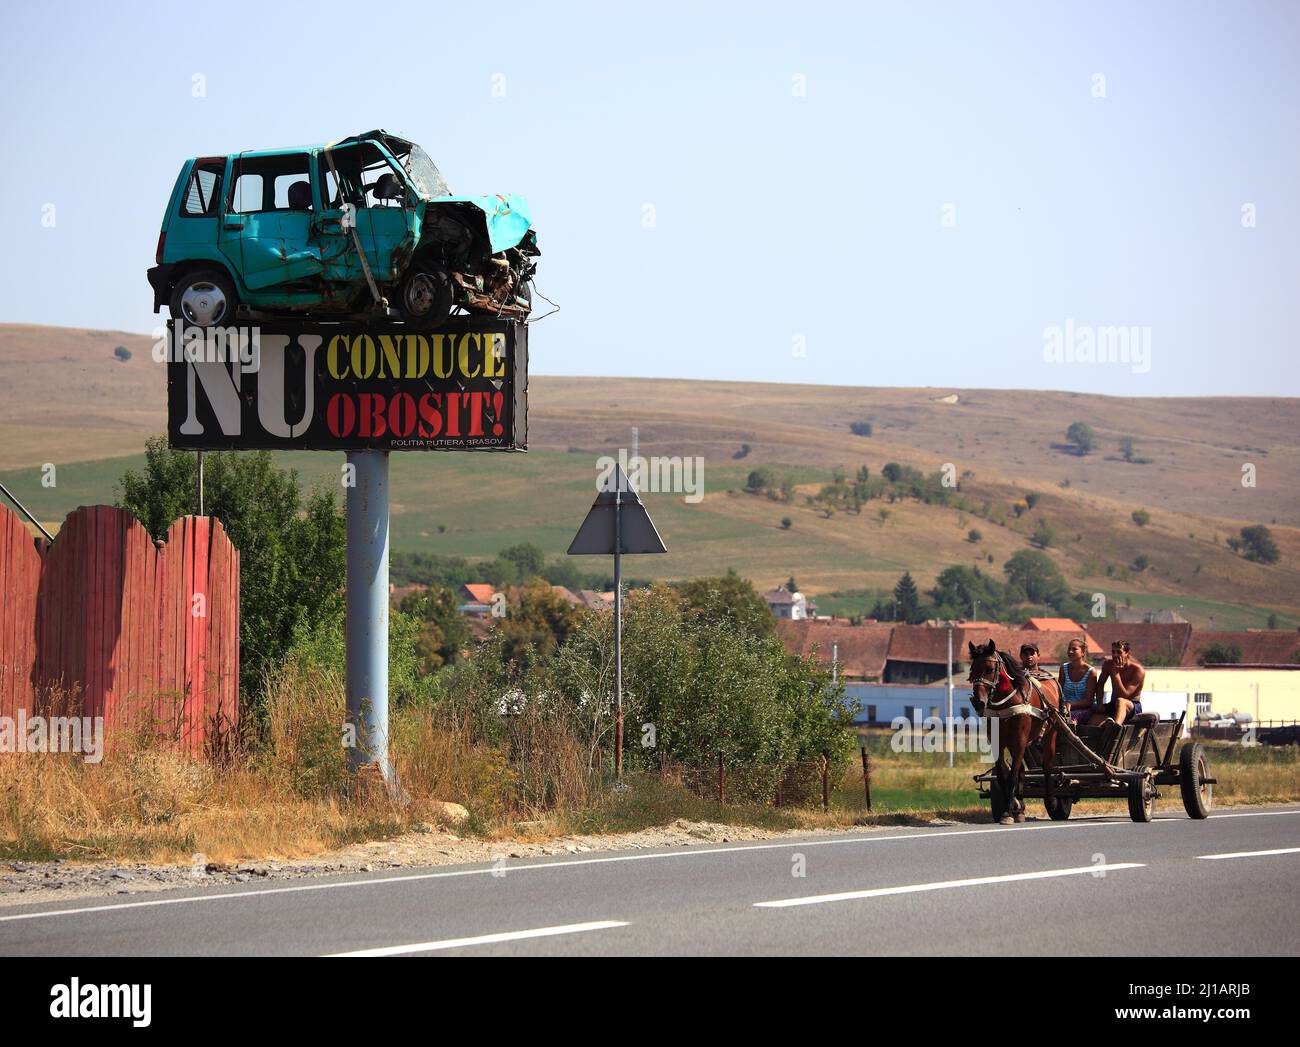 Straßenverkehr in Siebenbürgen, Rumänien, als Warnung wurde ein Unfallwagen als Verkehrsschild montiert, Pferdegespann auf der Straße  /  Road traffic Stock Photo